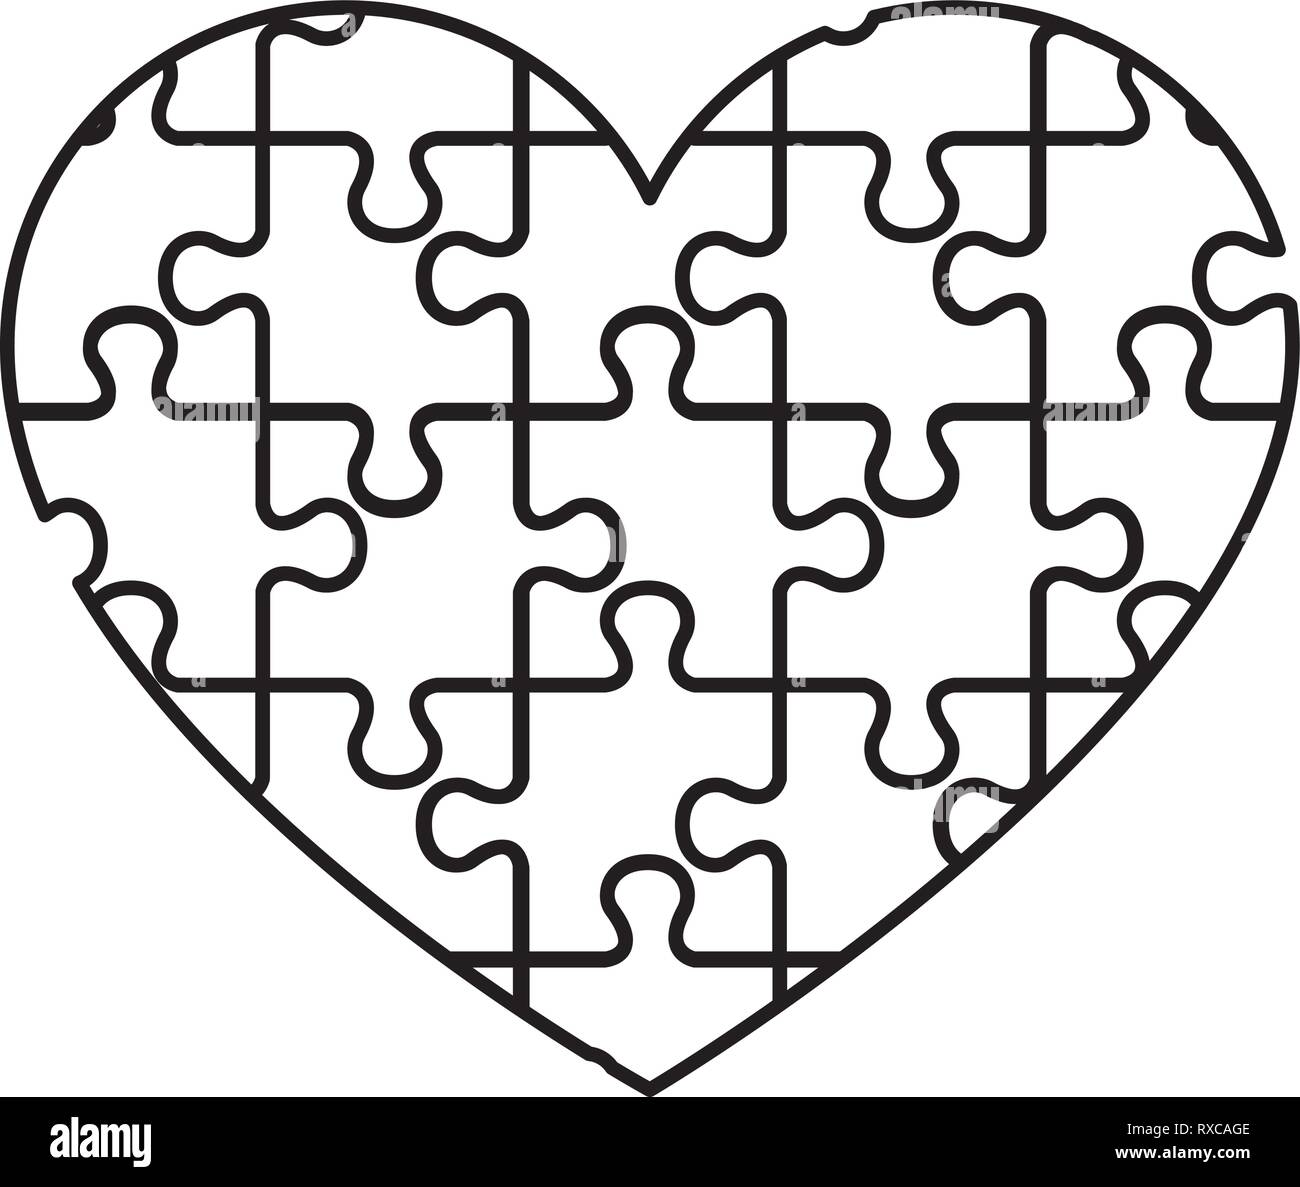 Rompecabezas del corazón Imágenes de stock en blanco y negro - Alamy